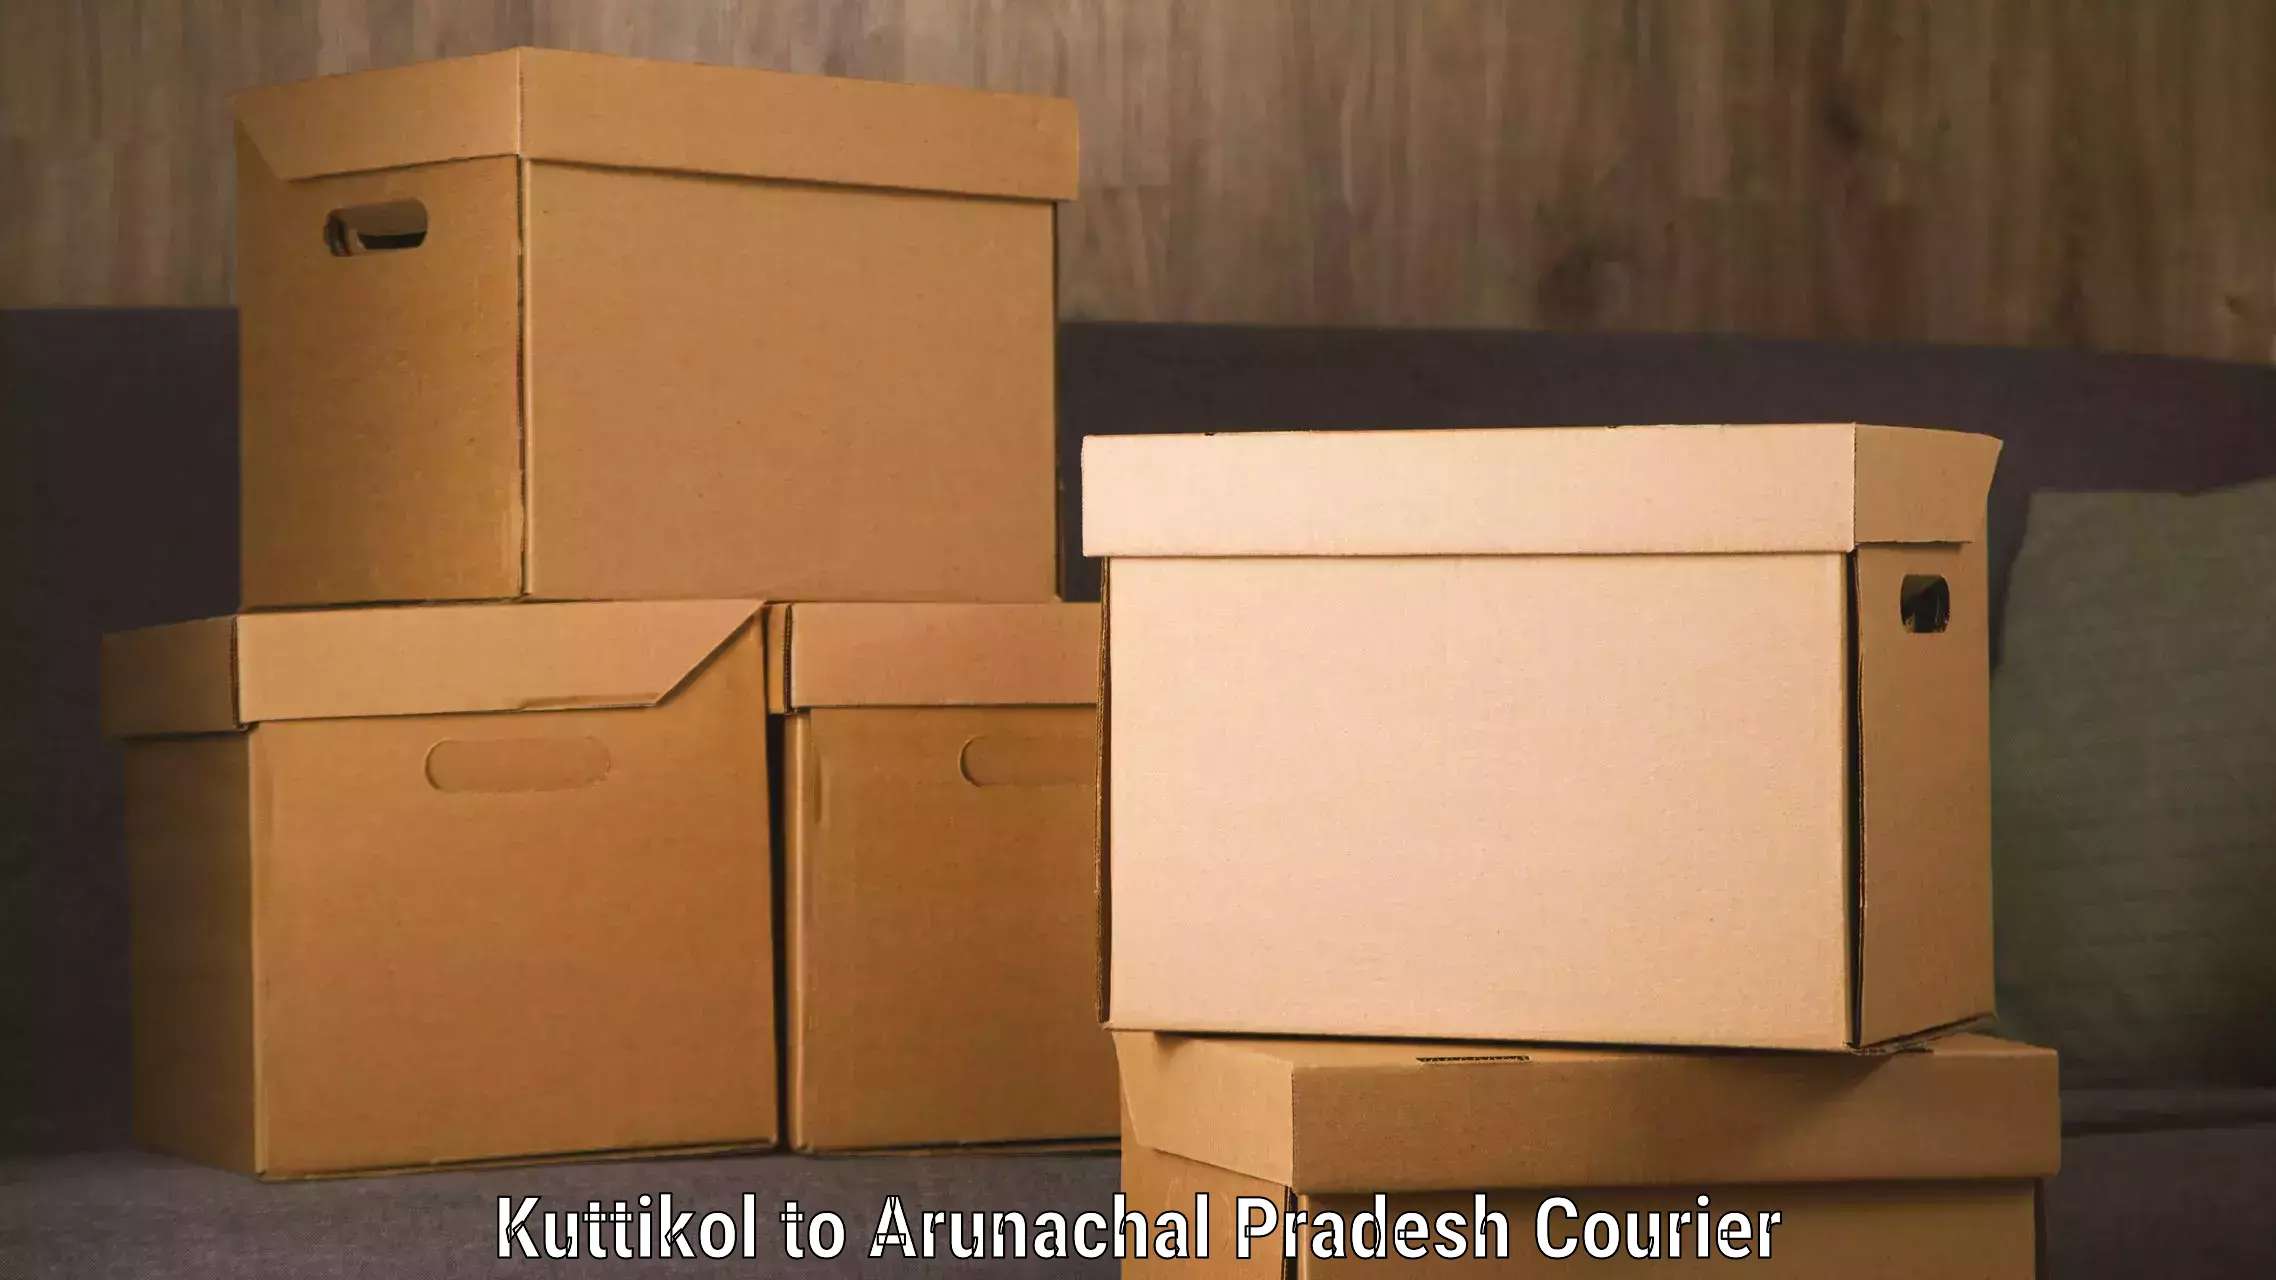 Speedy delivery service in Kuttikol to Arunachal Pradesh